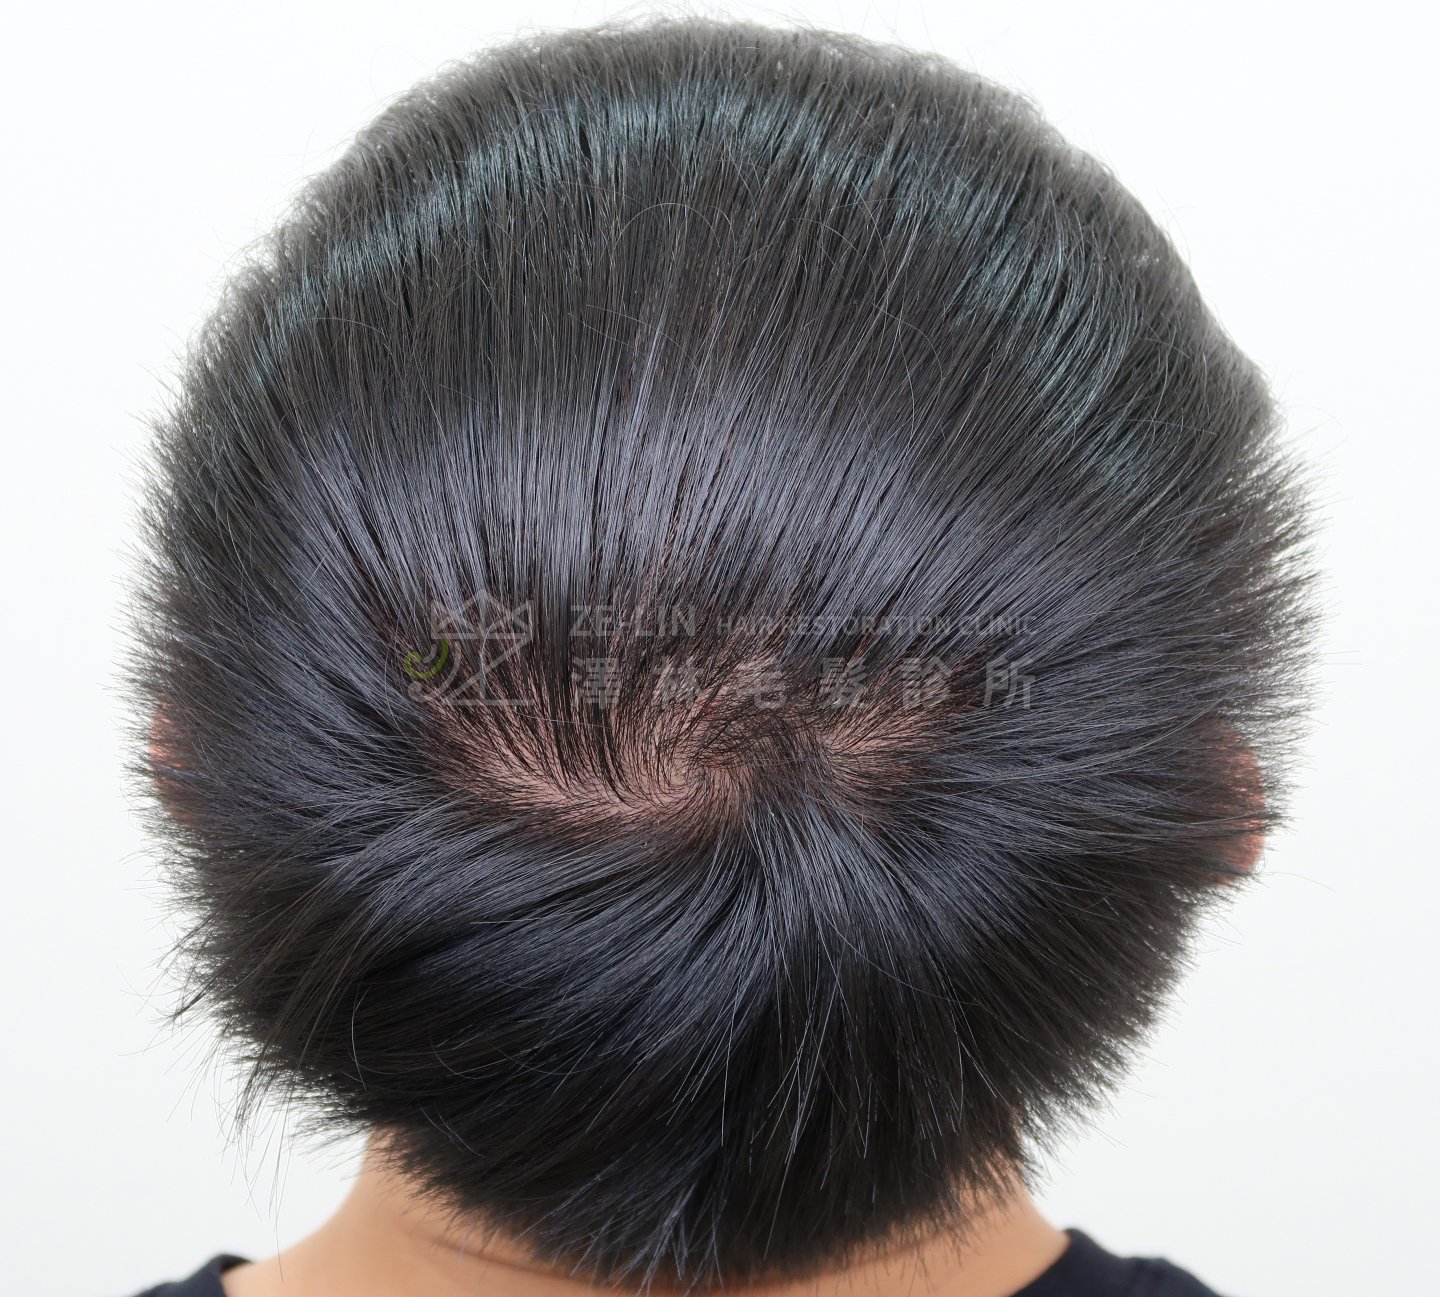 生髮育髮治療PRP自體生長因子注射治療雄性禿術前1